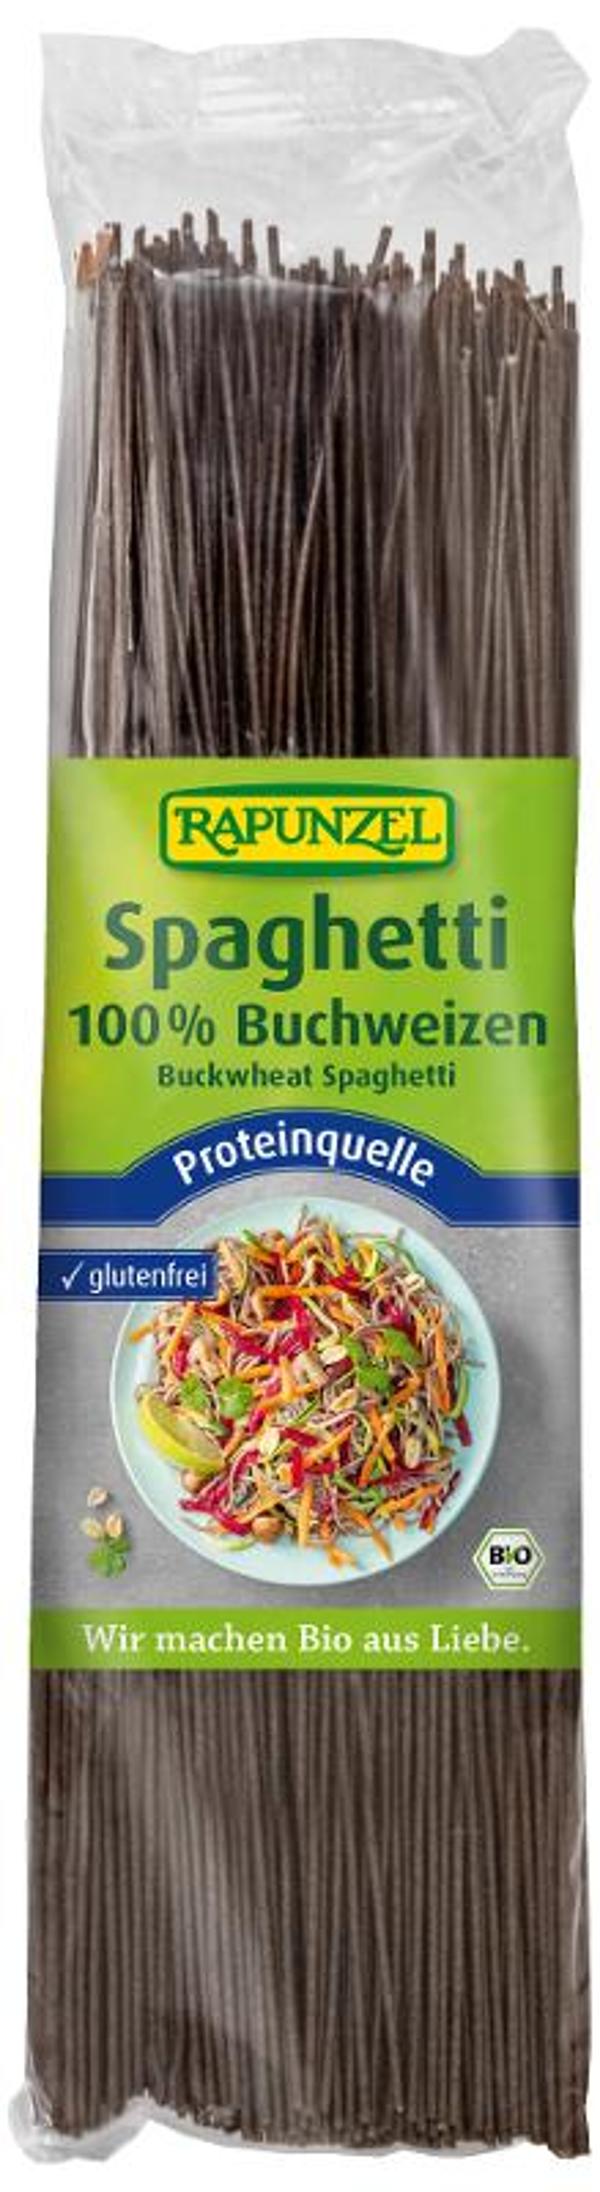 Produktfoto zu Buchweizen Spaghetti - 250g